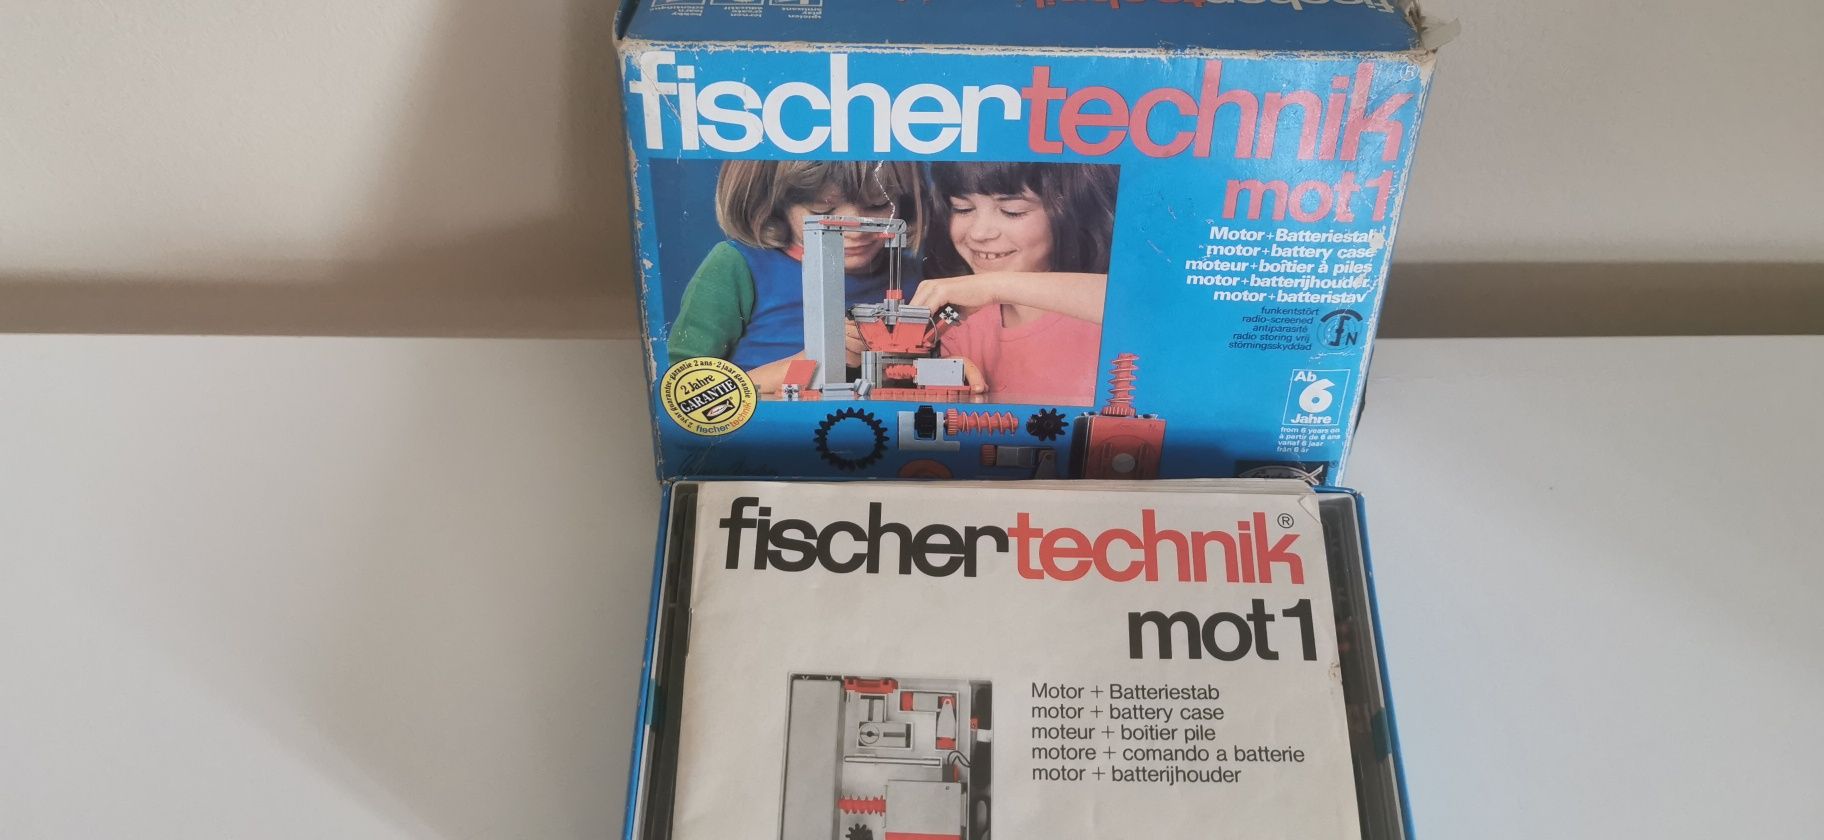 Fishertechnik Mot 1 zestaw z lat 70